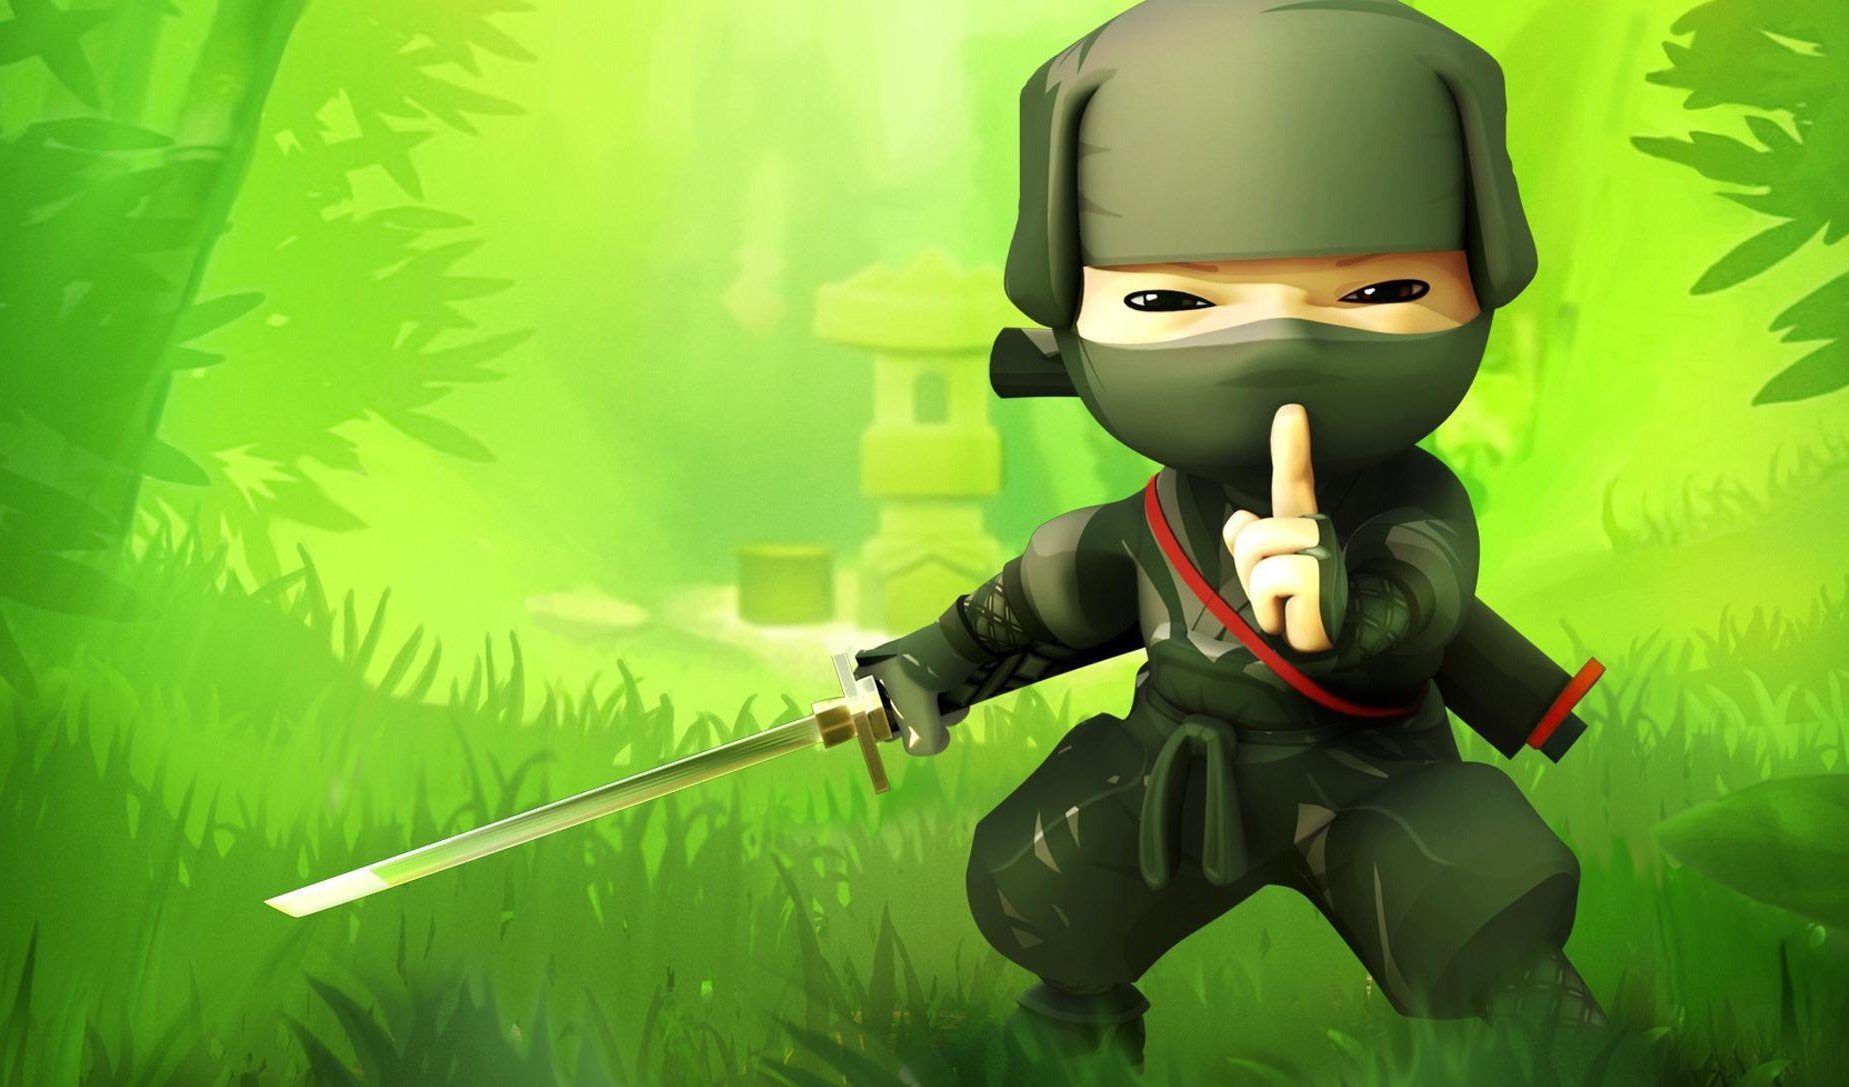 Get a Mini Ninjas Steam Key Free From Square Enix